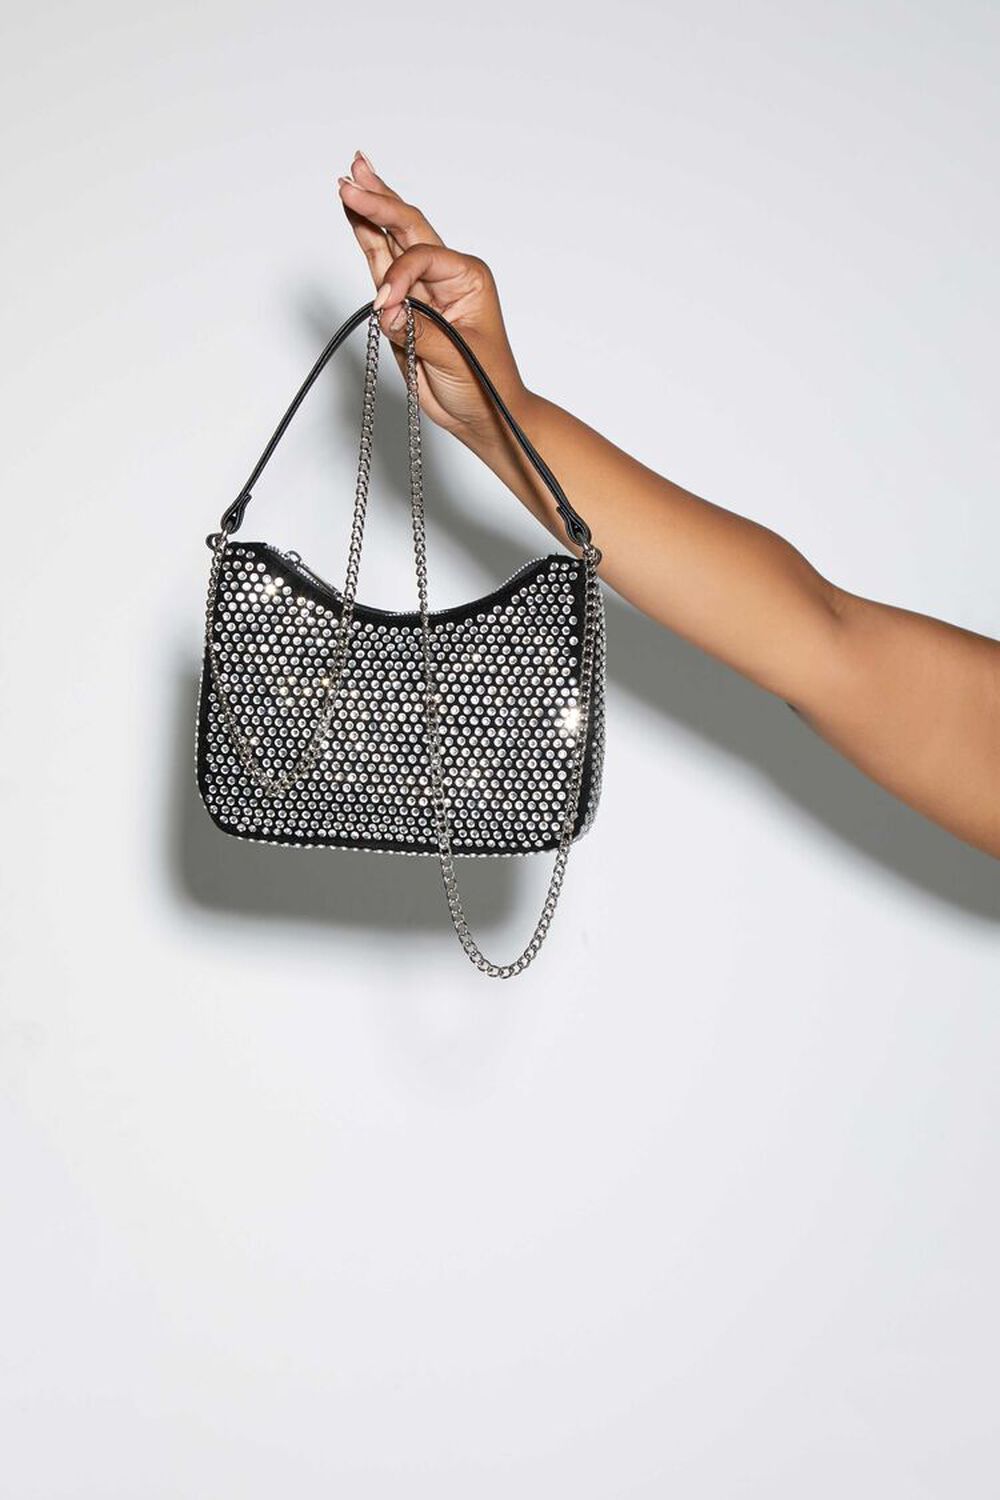 Embellished Chain Baguette Bag, image 1